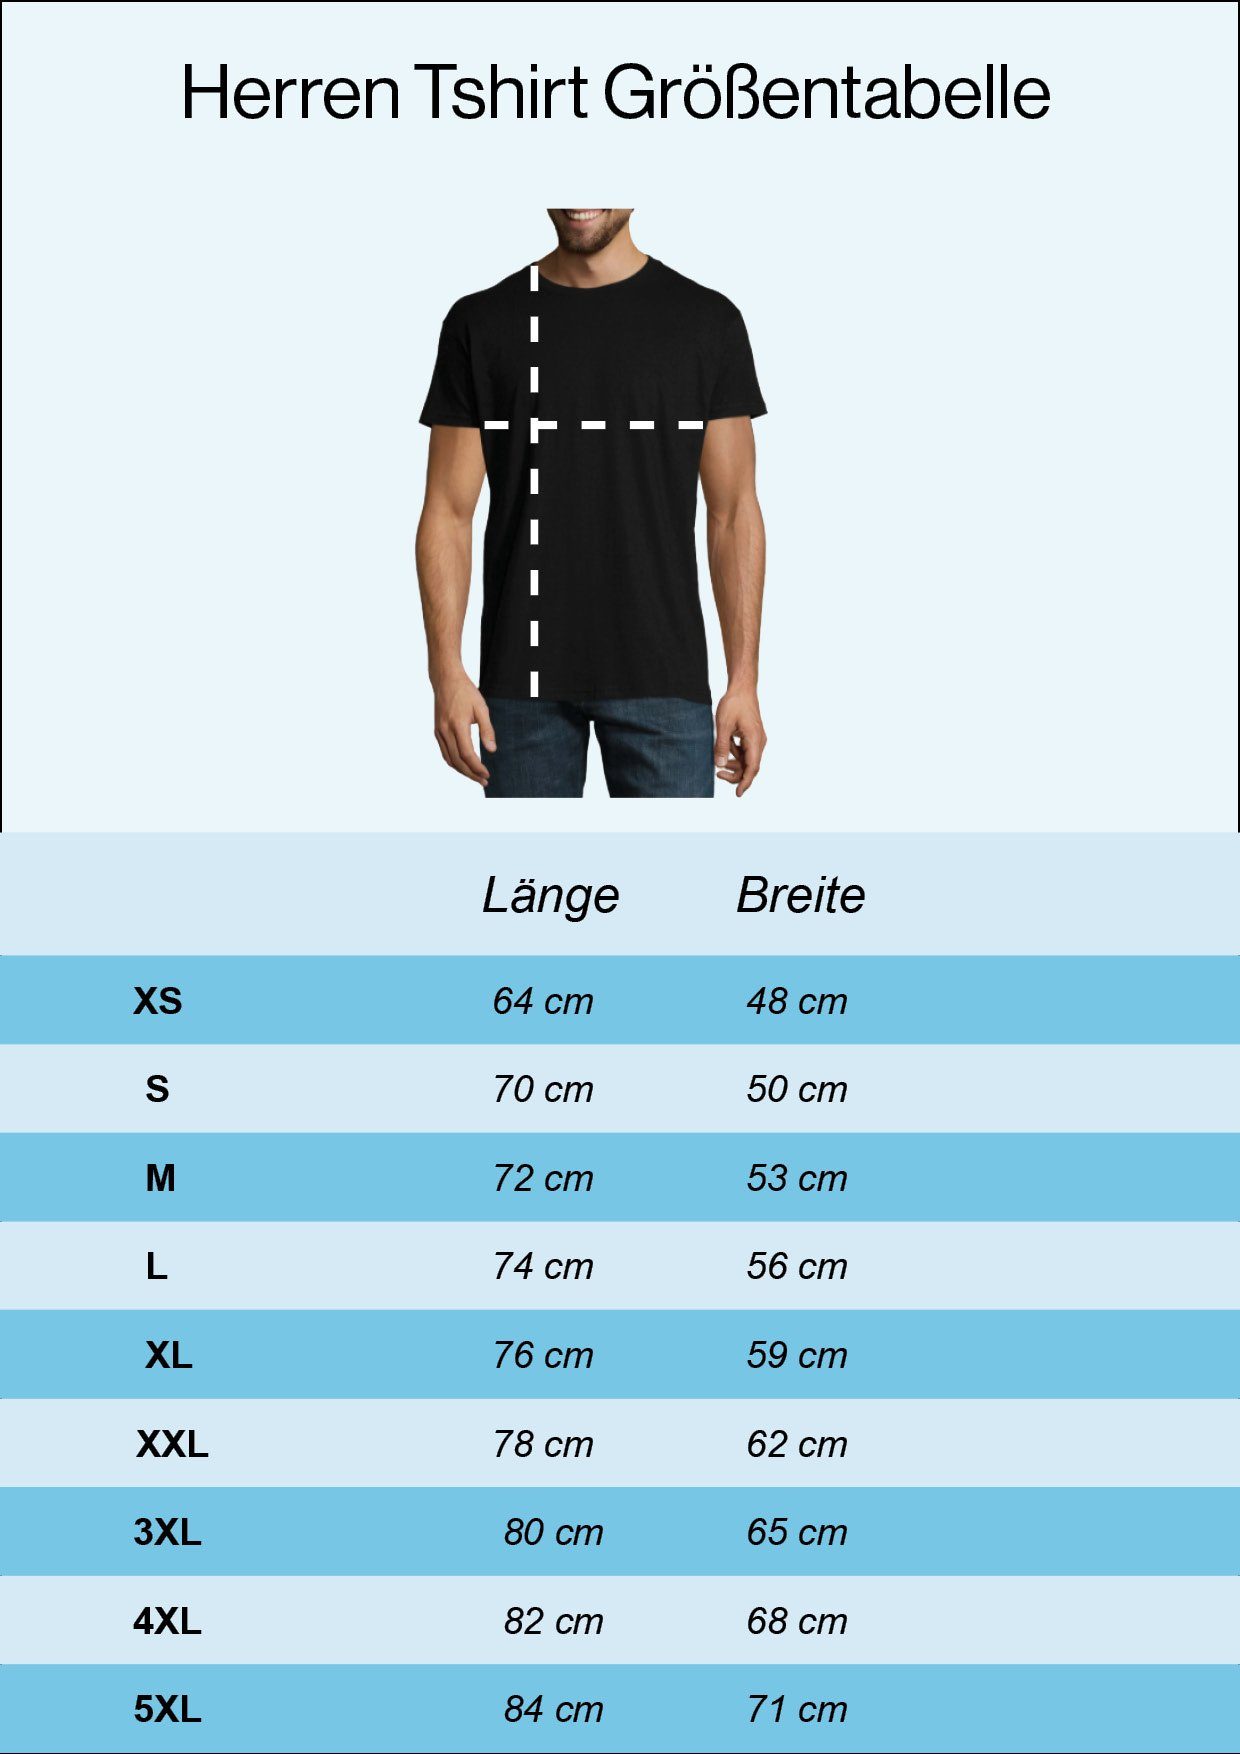 Youth Designz Erholen mit T-Shirt Das Sich Werkzeug Frontprint Handwerker Muss Shirt lustigem Navyblau Herren